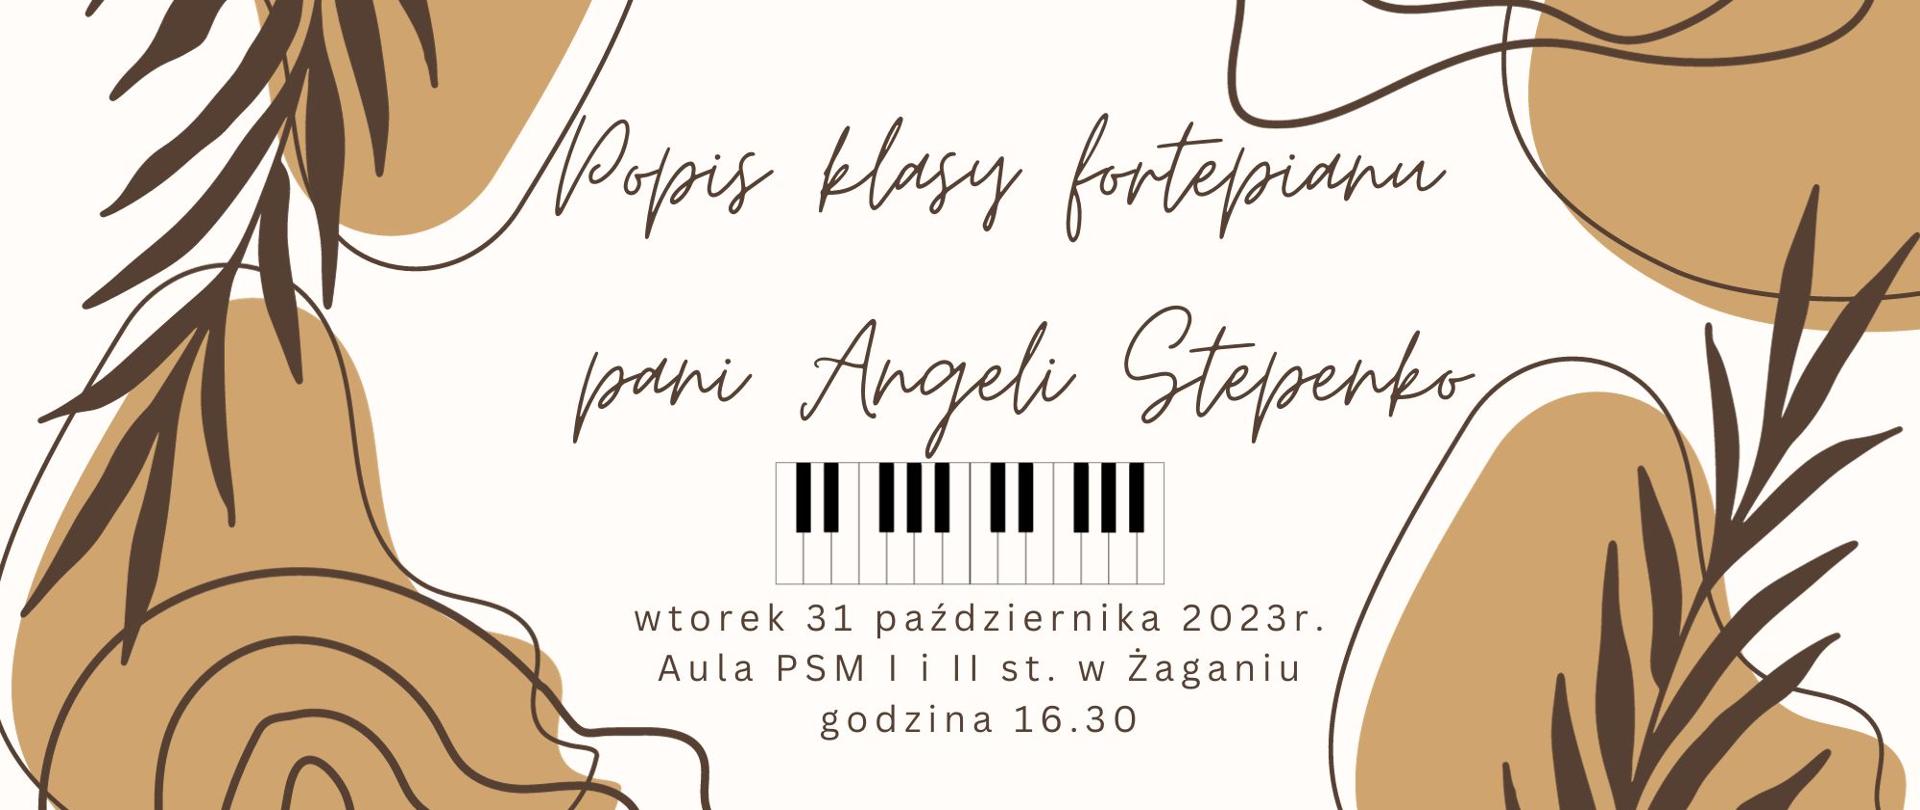  Popis klasy fortepianu pani Angeli Stepenko, wtorek 31 października 2023r. aula PSM I i II st. w Żaganiu